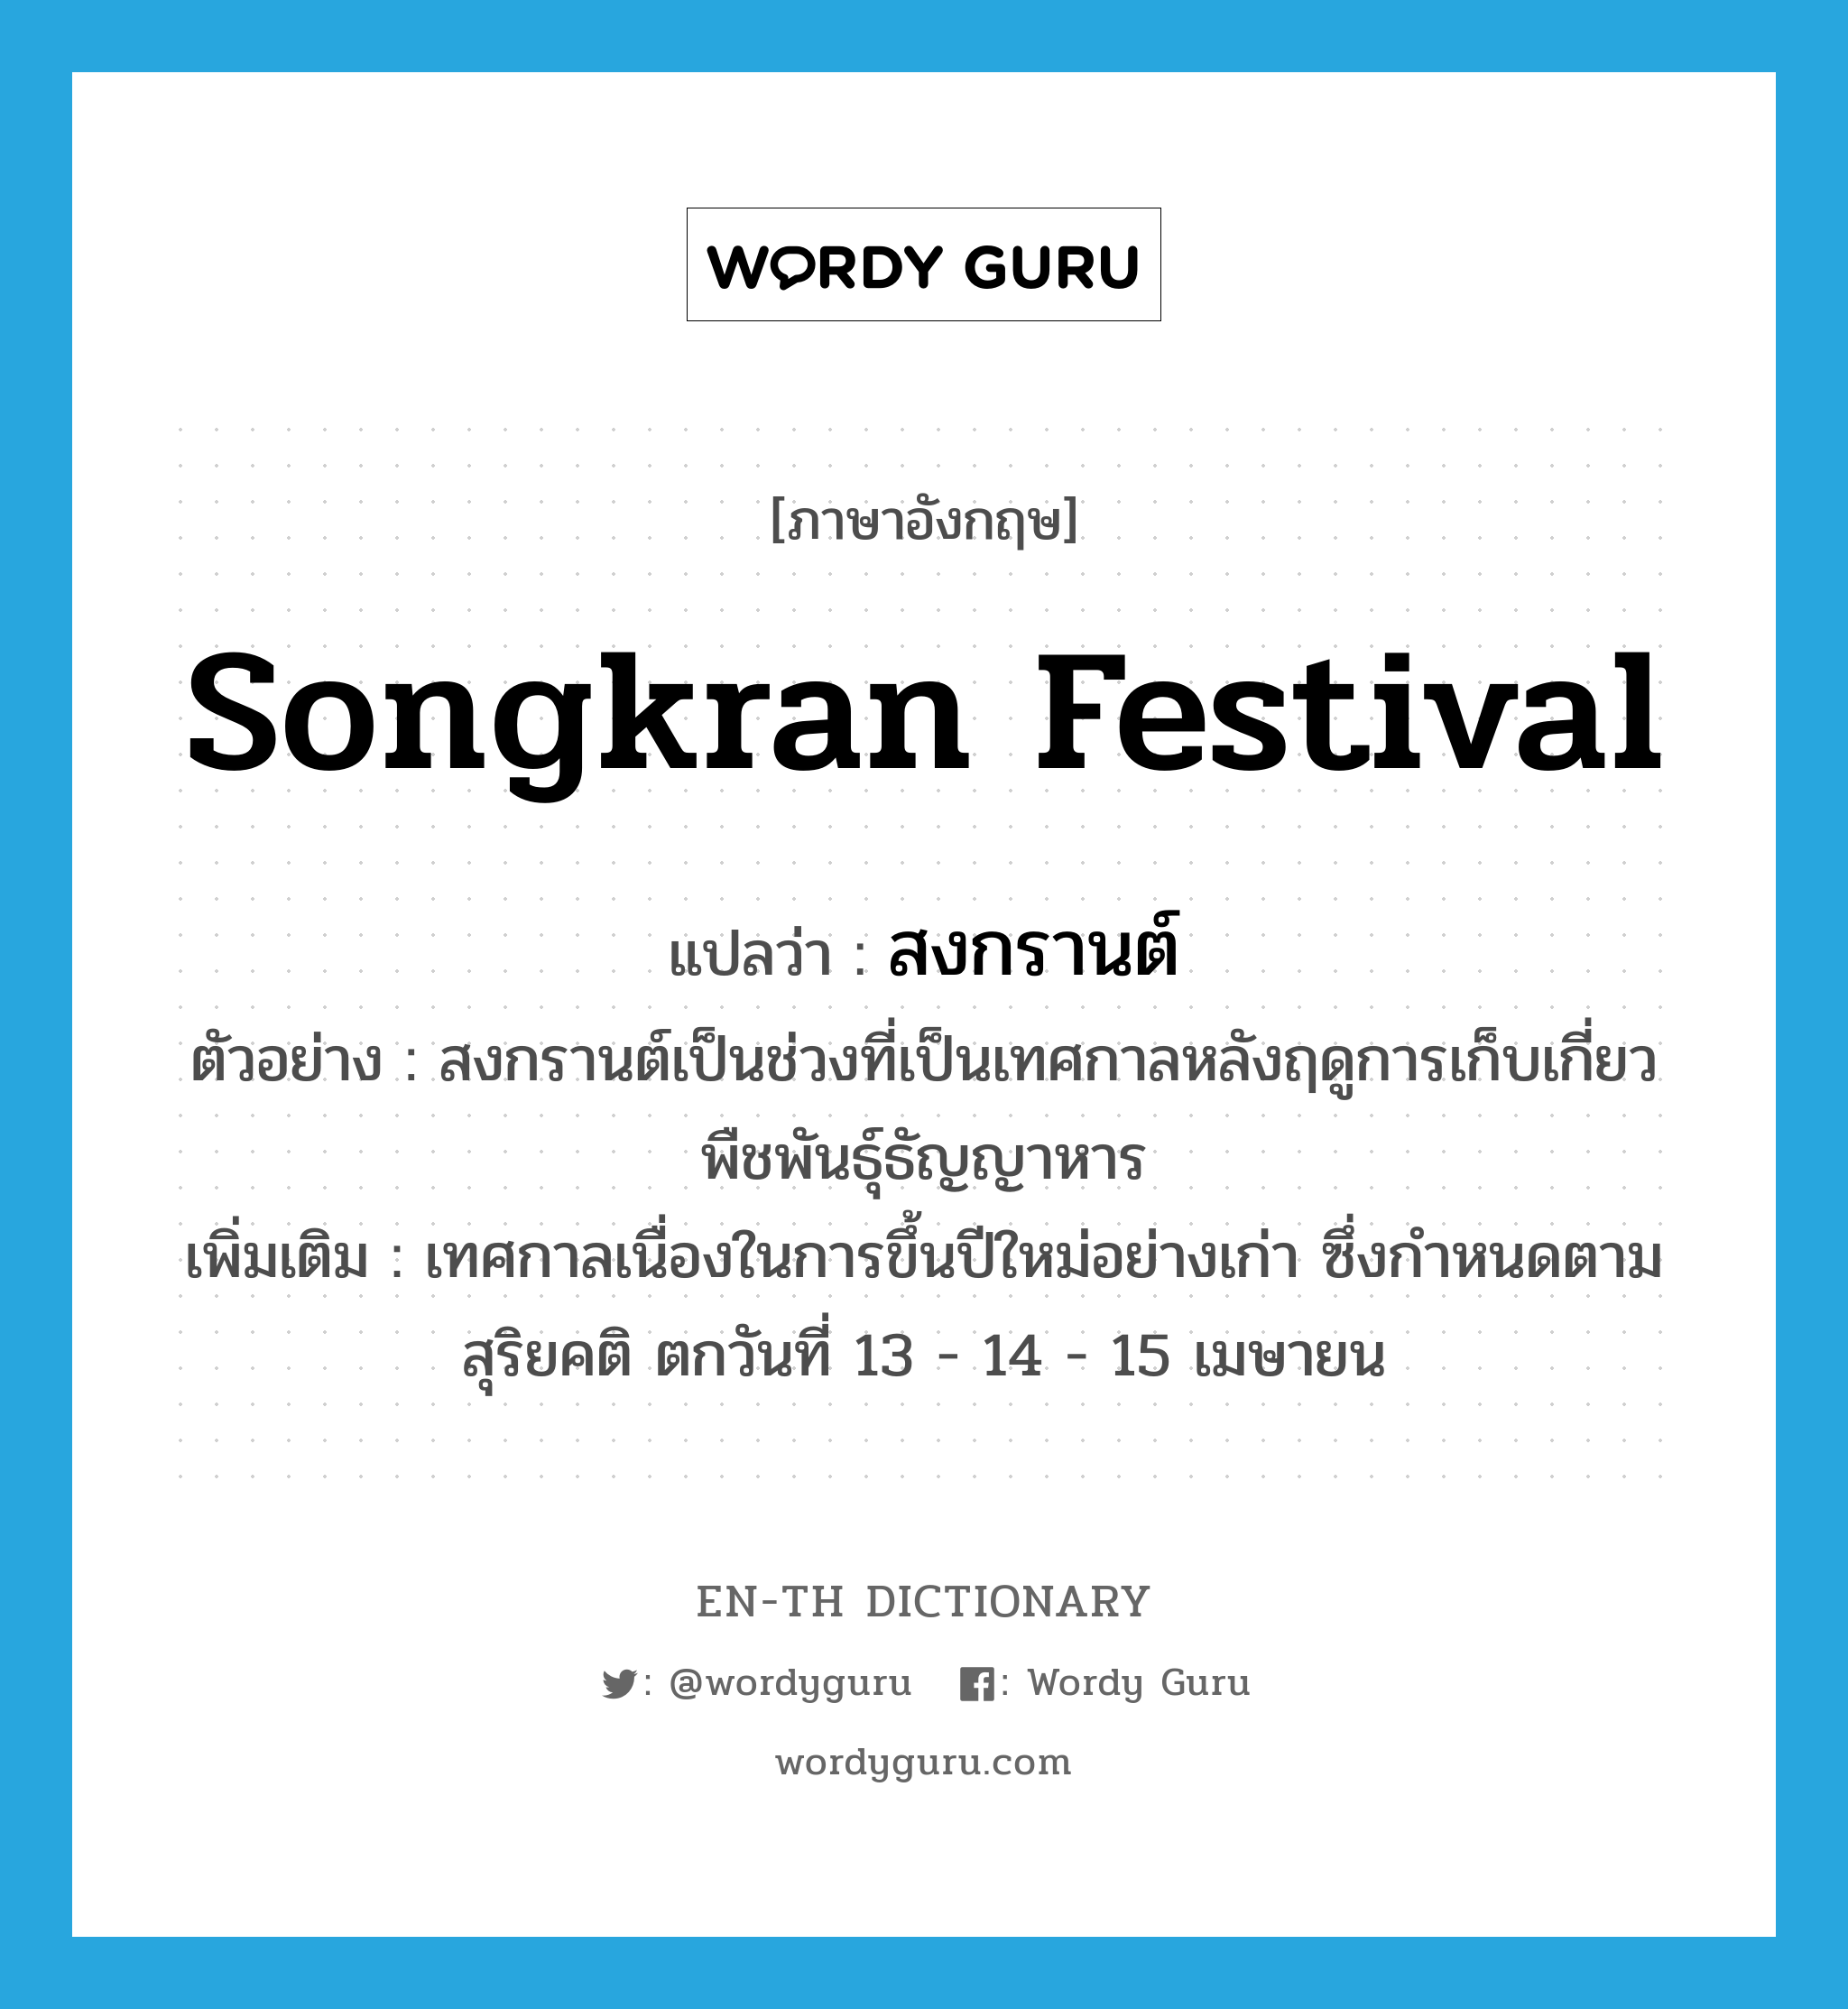 Songkran festival แปลว่า?, คำศัพท์ภาษาอังกฤษ Songkran festival แปลว่า สงกรานต์ ประเภท N ตัวอย่าง สงกรานต์เป็นช่วงที่เป็นเทศกาลหลังฤดูการเก็บเกี่ยวพืชพันธุ์ธัญญาหาร เพิ่มเติม เทศกาลเนื่องในการขึ้นปีใหม่อย่างเก่า ซึ่งกำหนดตามสุริยคติ ตกวันที่ 13 - 14 - 15 เมษายน หมวด N